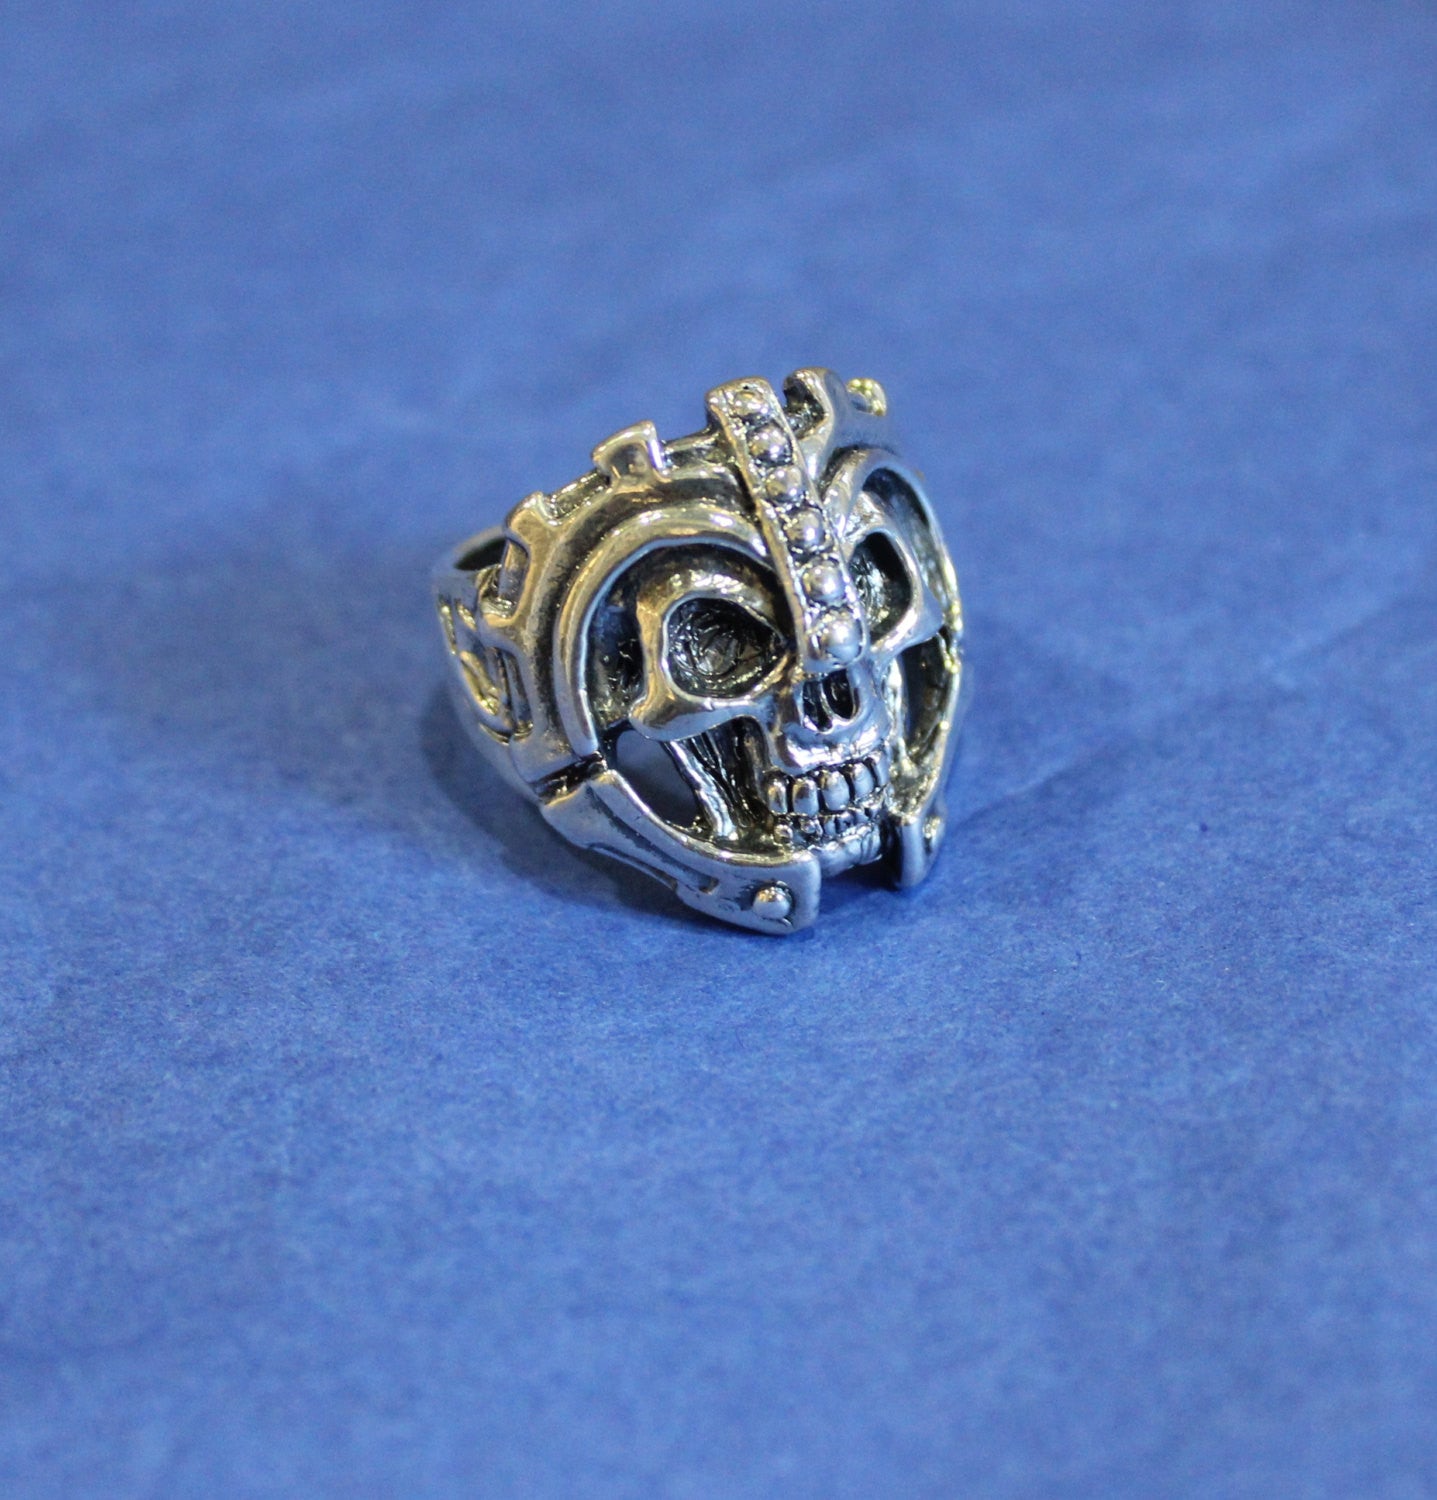 Until Death, Inc. "Warrior Skull Ring" Huge .925 Sterling Silver Biker Skull Ring.-UDINC0081